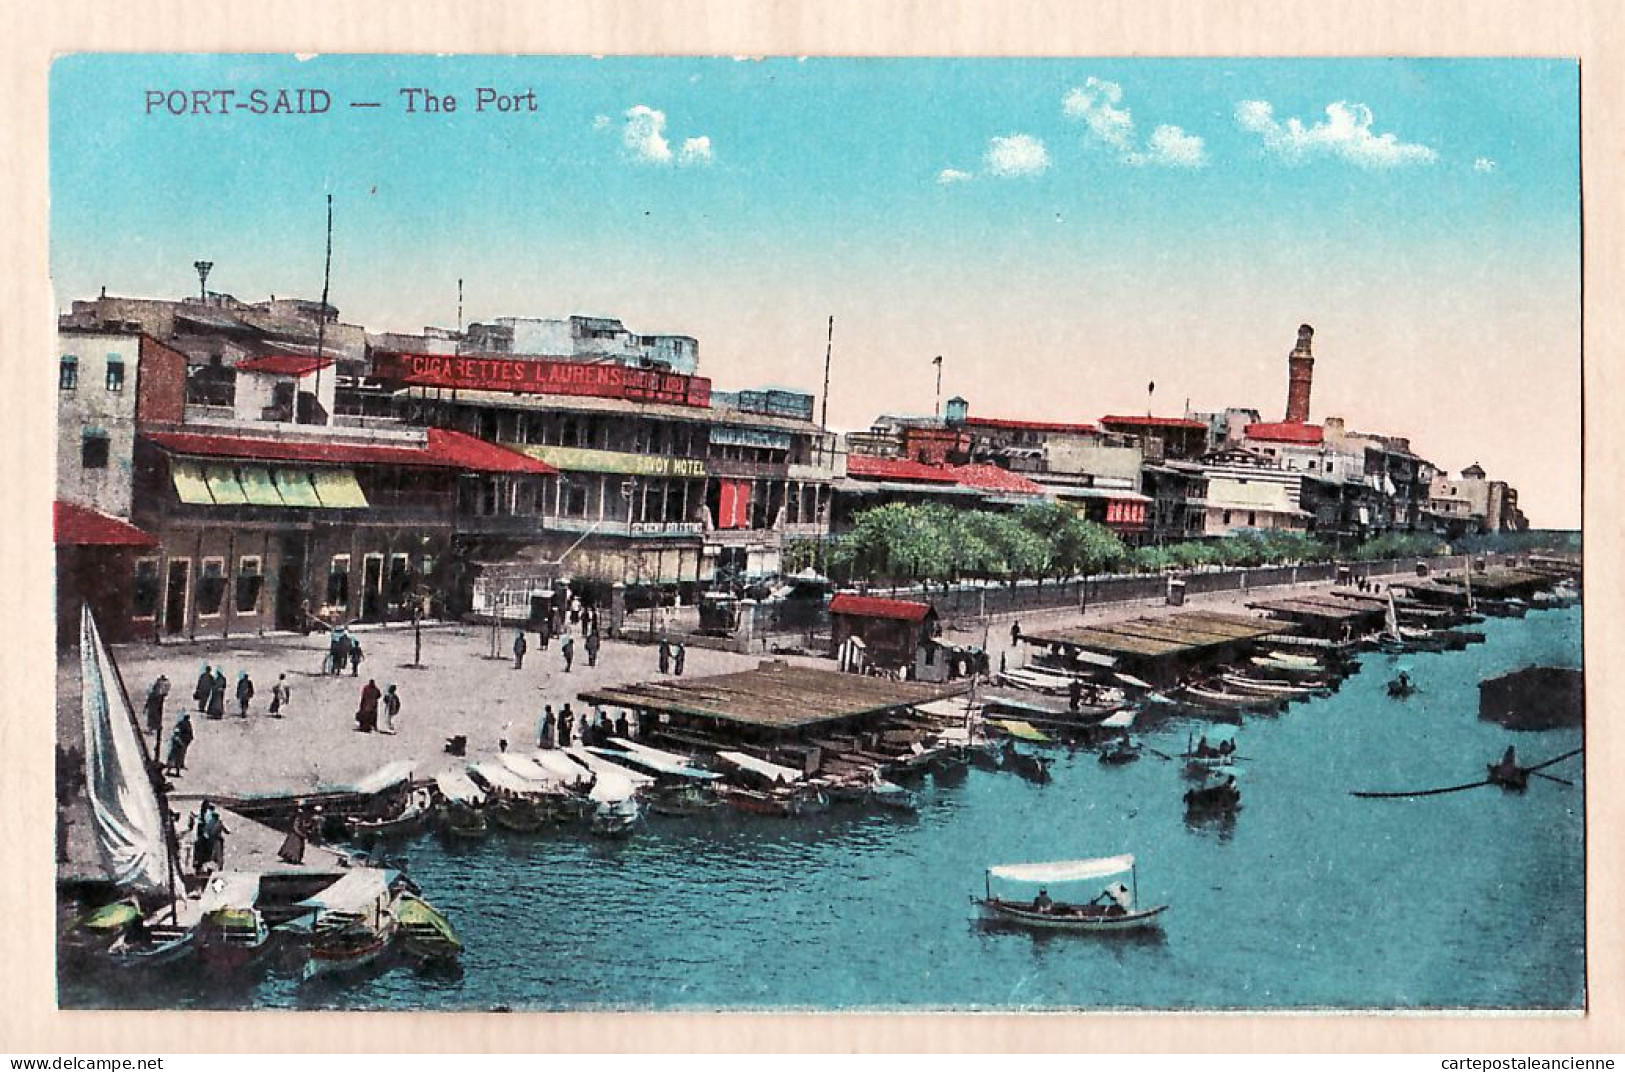 01851 / Egypt SUEZ PORT-SAÏD The Port Cigarettes Laurens SAVOY Hotel 1910s Litho Color CAIRO TRUST 499 Egypte Agypten  - Port Said